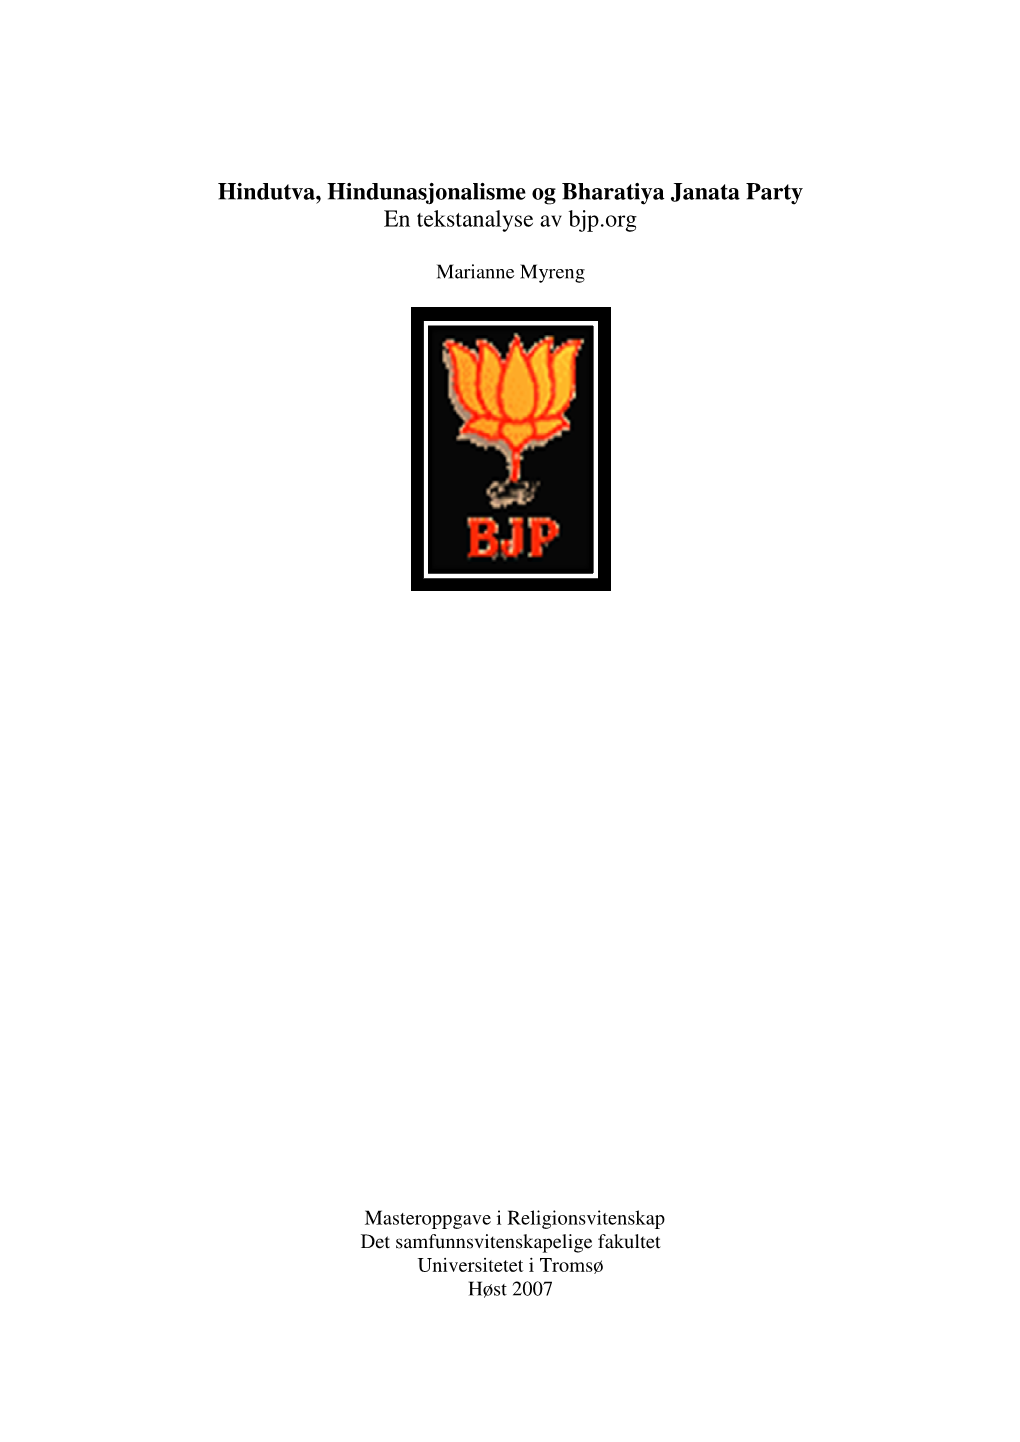 Hindutva, Hindunasjonalisme Og Bharatiya Janata Party En Tekstanalyse Av Bjp.Org